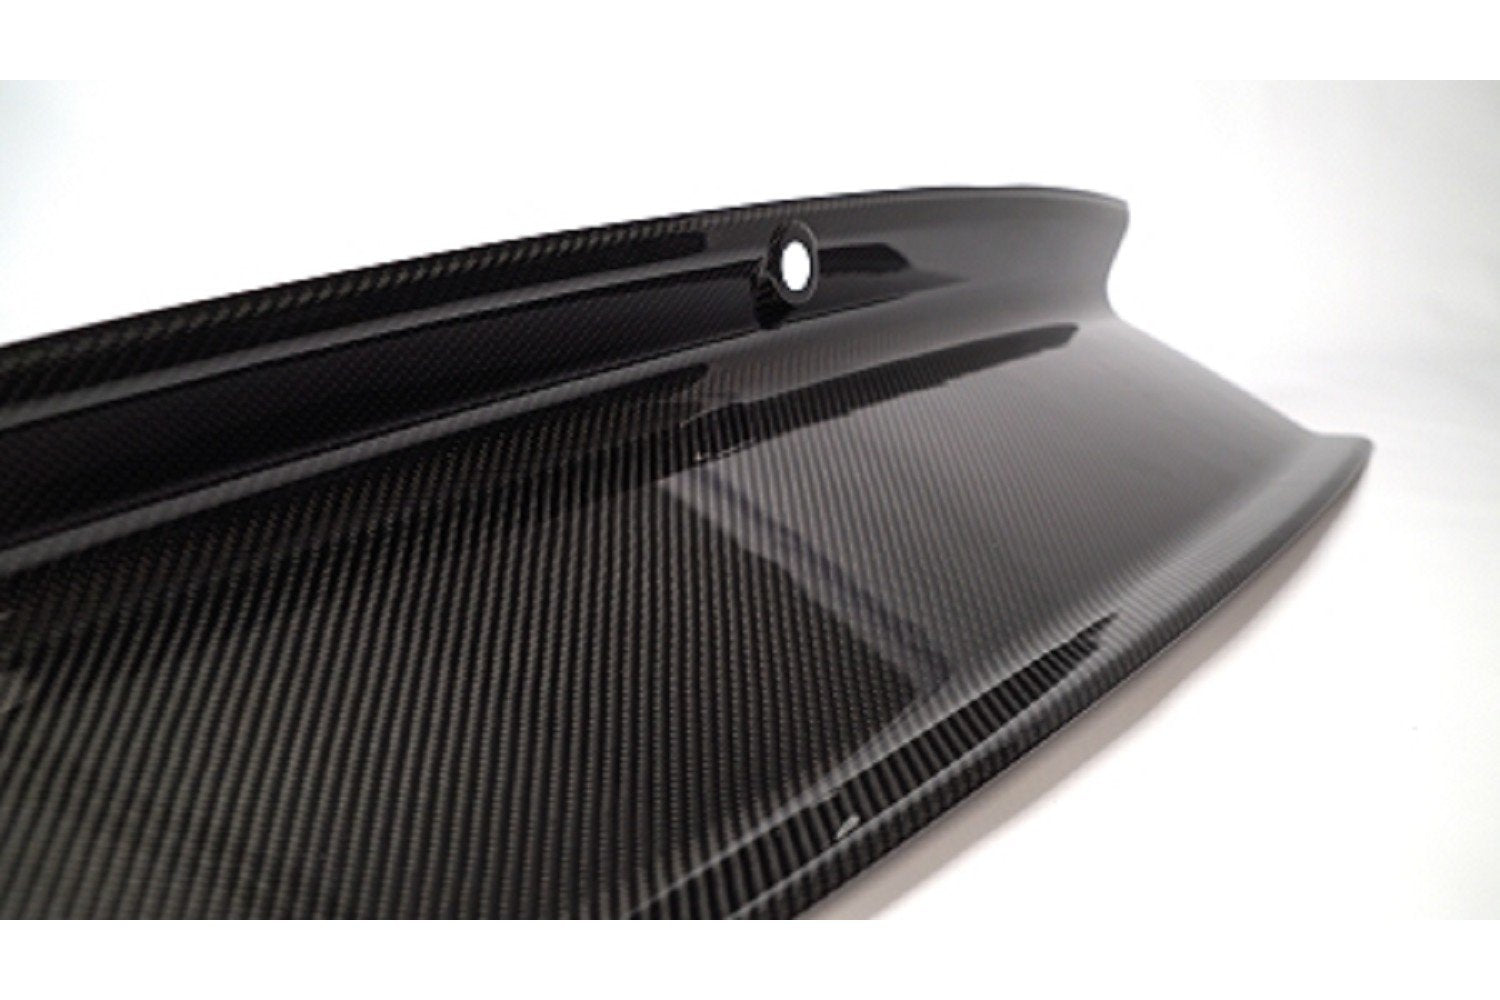 Tapa de cubierta trasera de carbono Anderson Composites para S550 Mustang